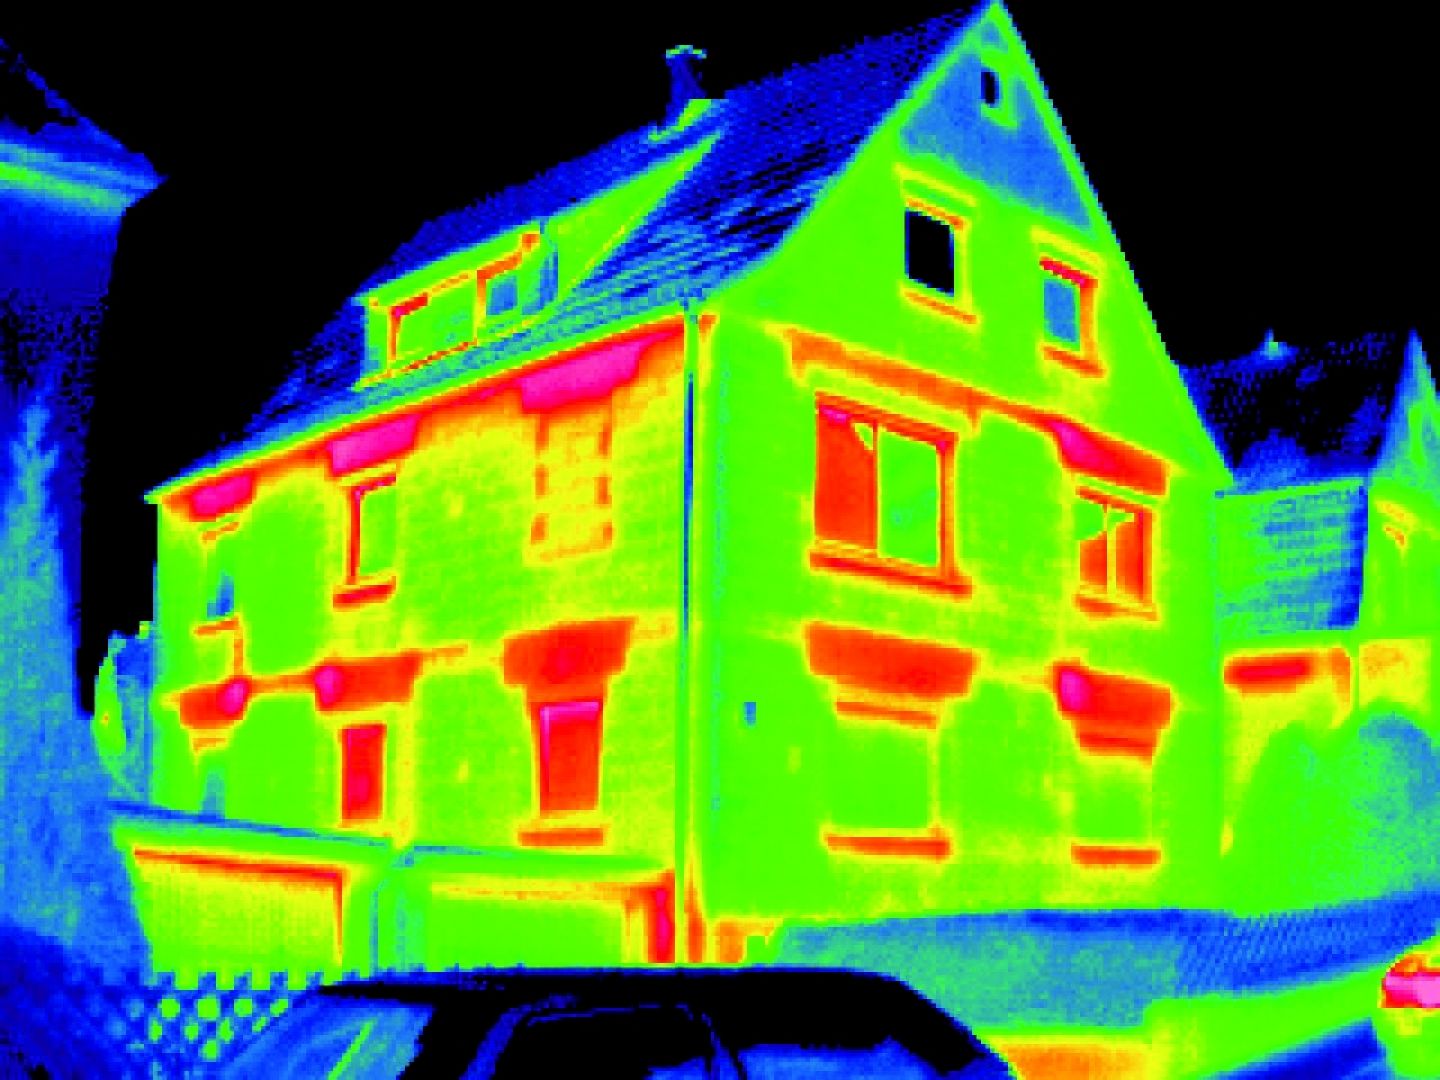 Zdjęcie domu zrobione kamerą termowizyjną. Fot. fischer